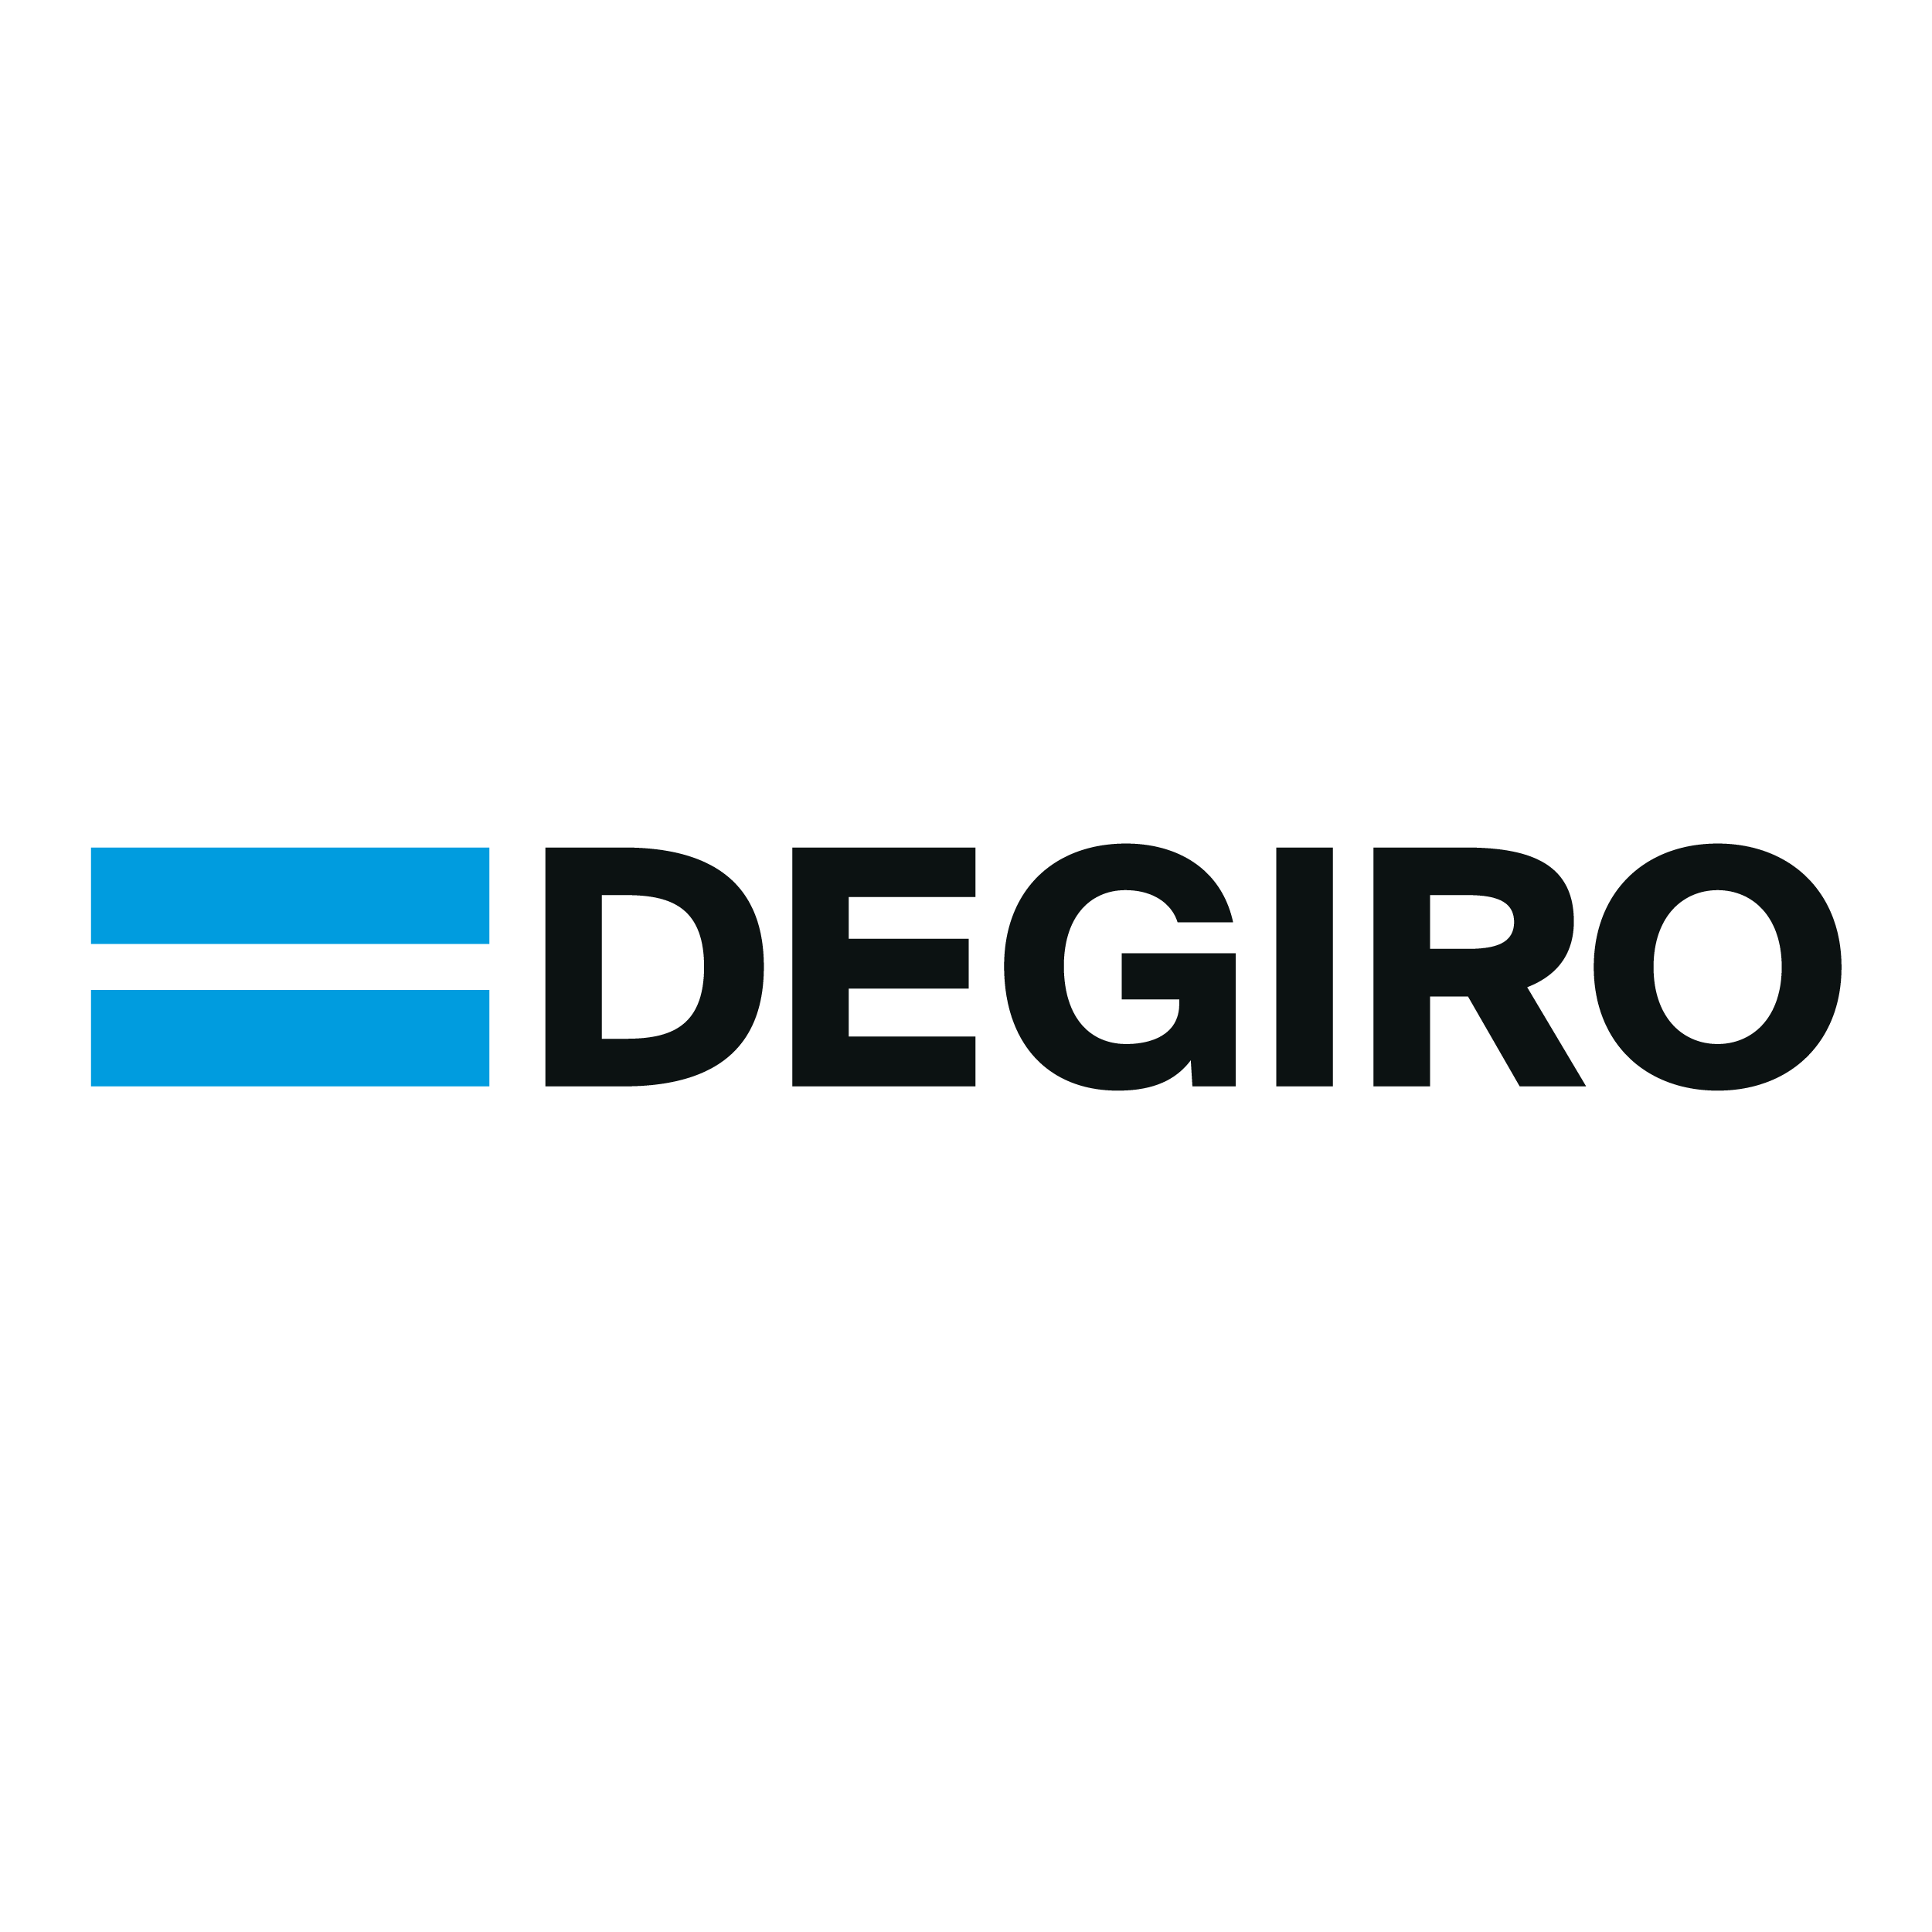 Har du testat att handla ETFer genom Degiro?